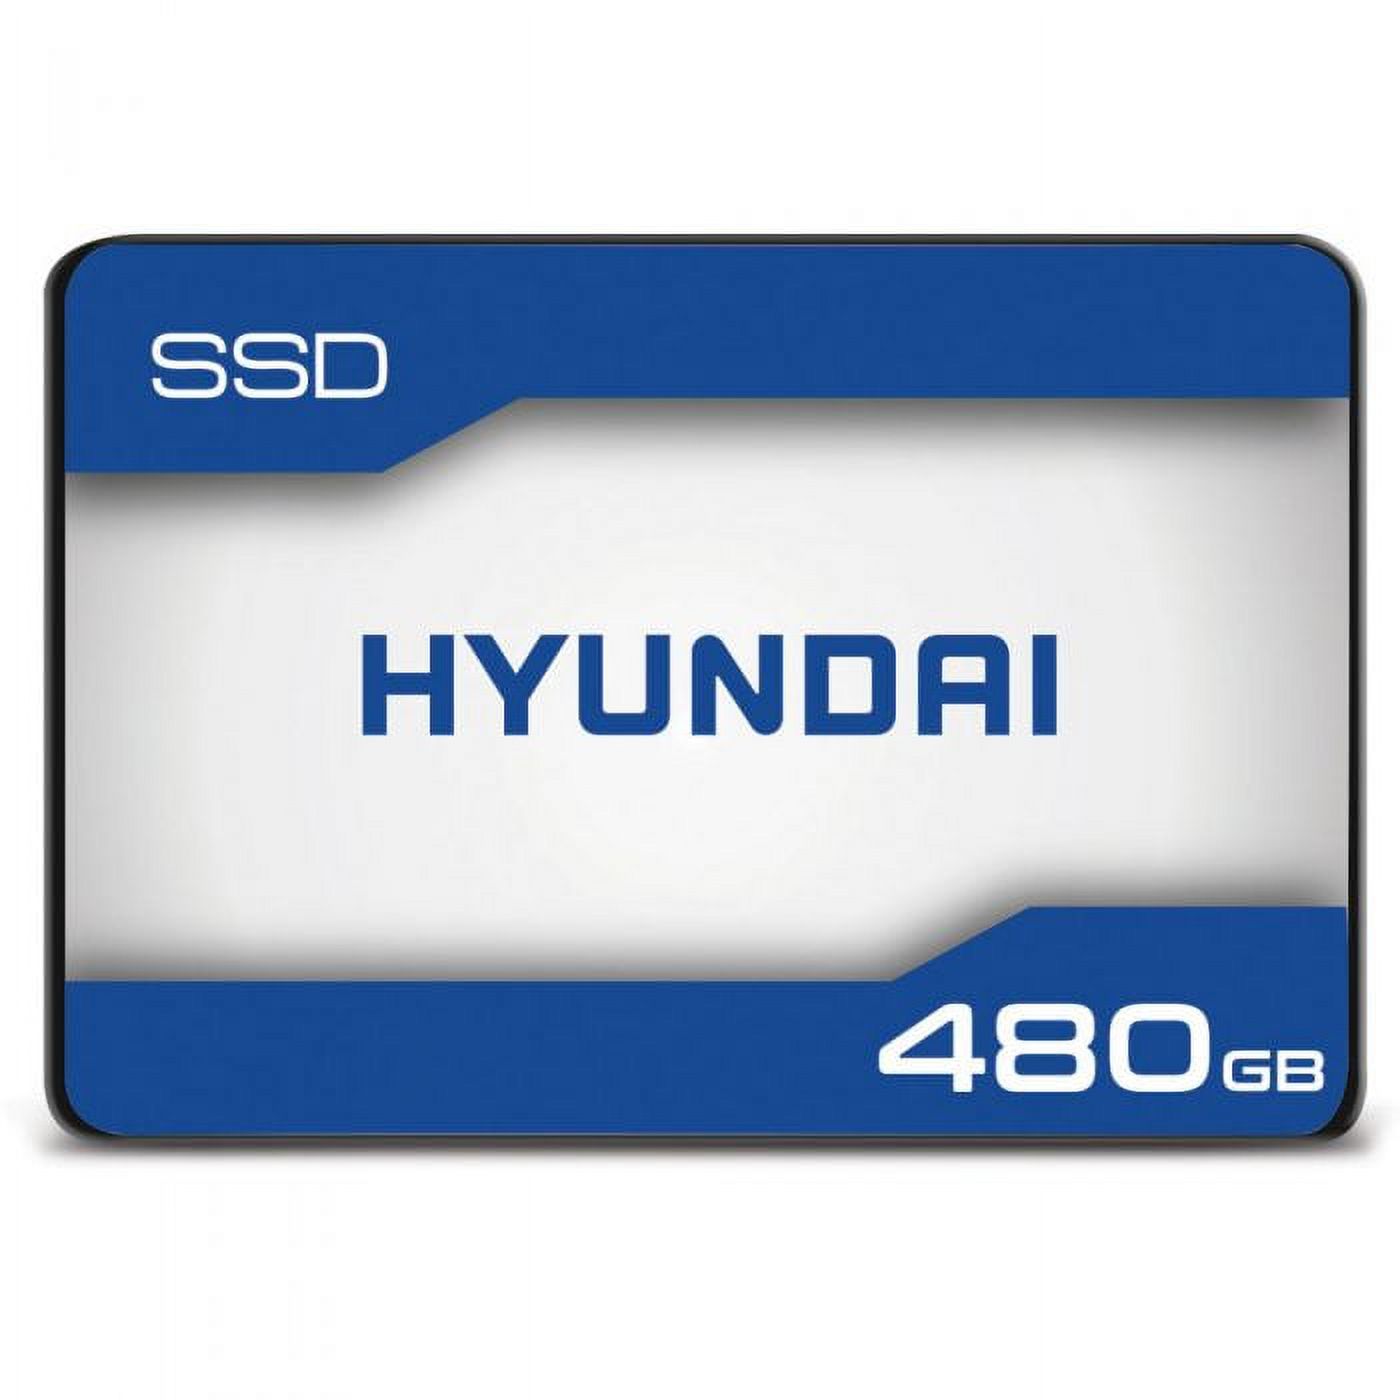 Hyundai 480GB Internal Solid State Drive 2.5"- SATA(SATA/600) - 500 MB/s - image 1 of 6